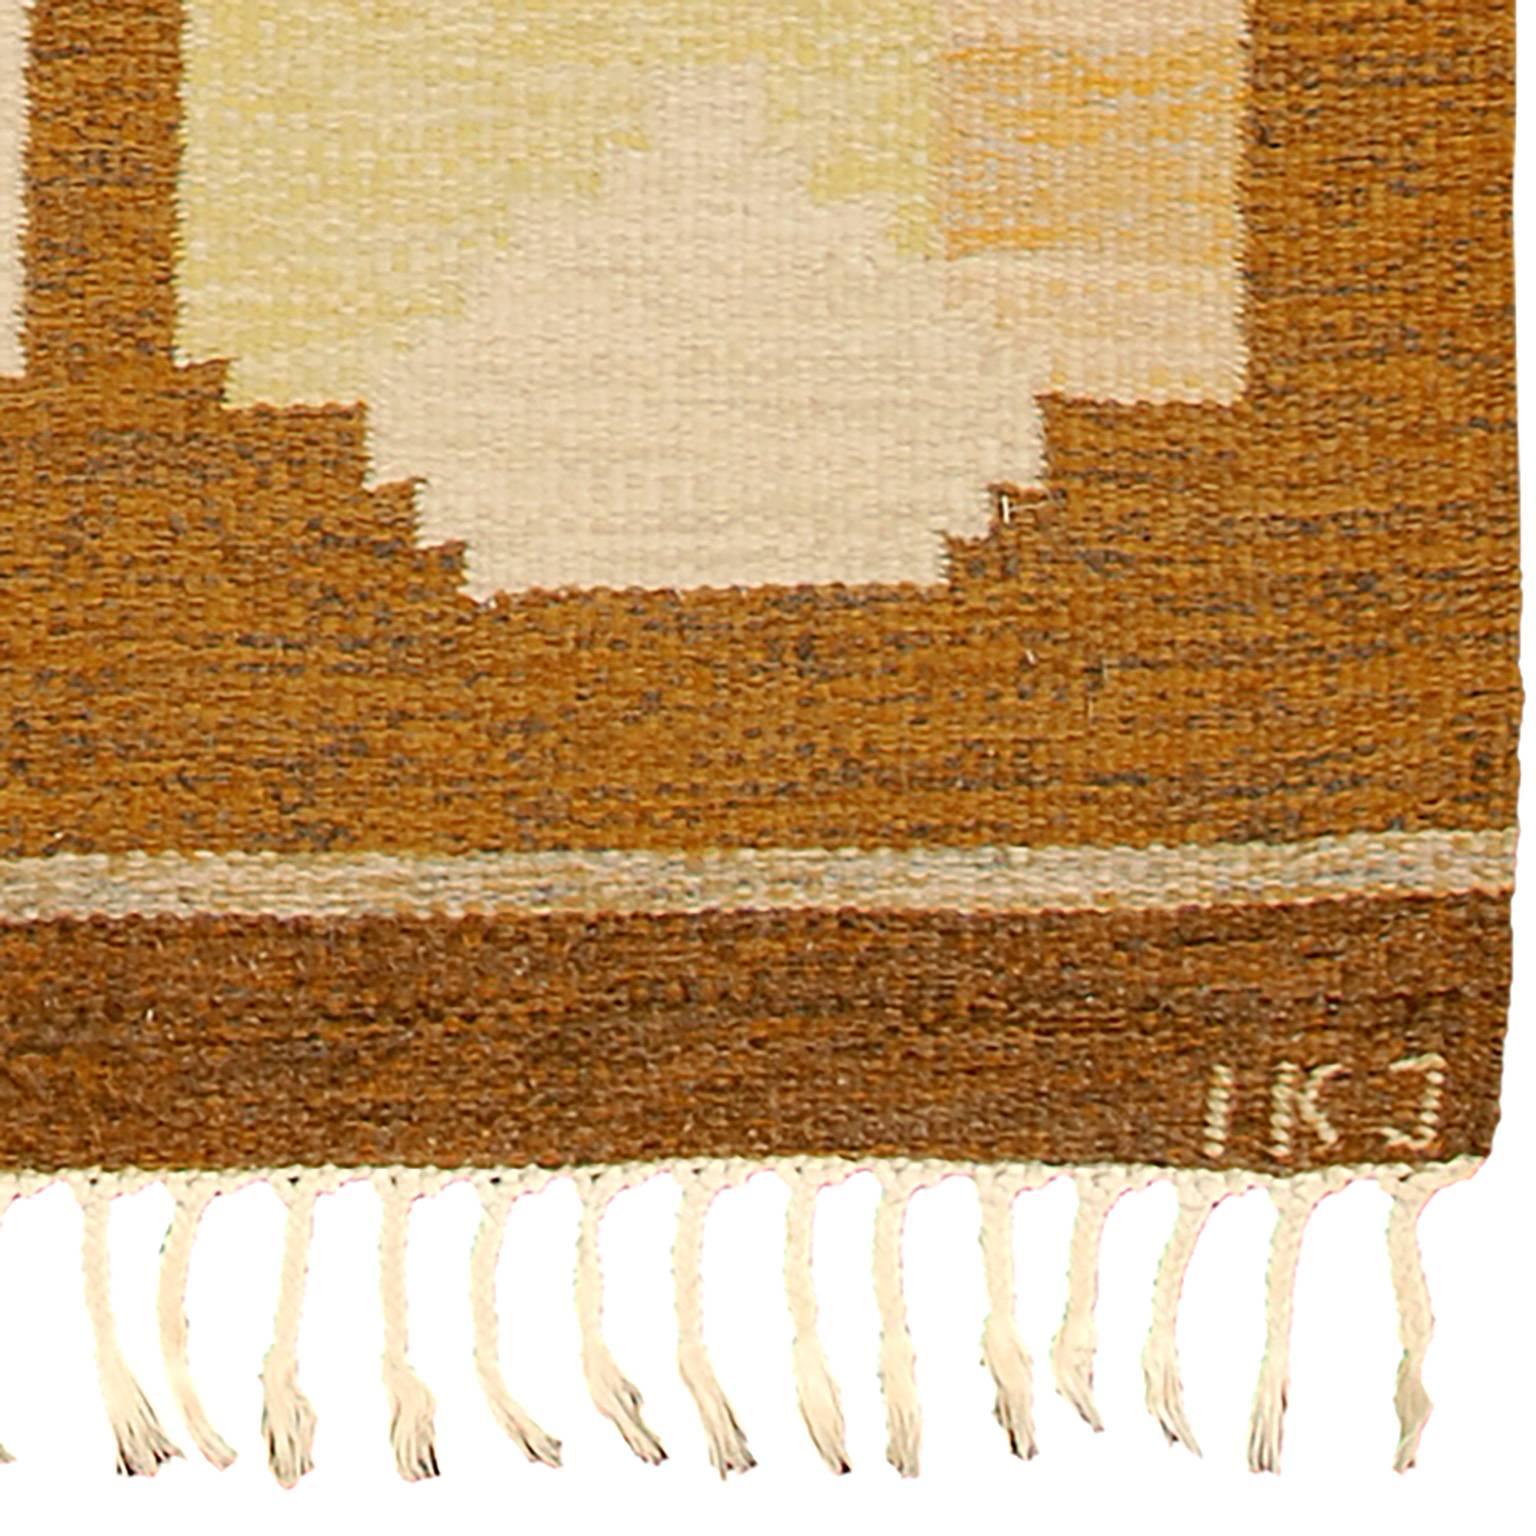 Vintage Swedish flat-weave carpet
Sweden, Initialed IKJ
100% wool
Handwoven.